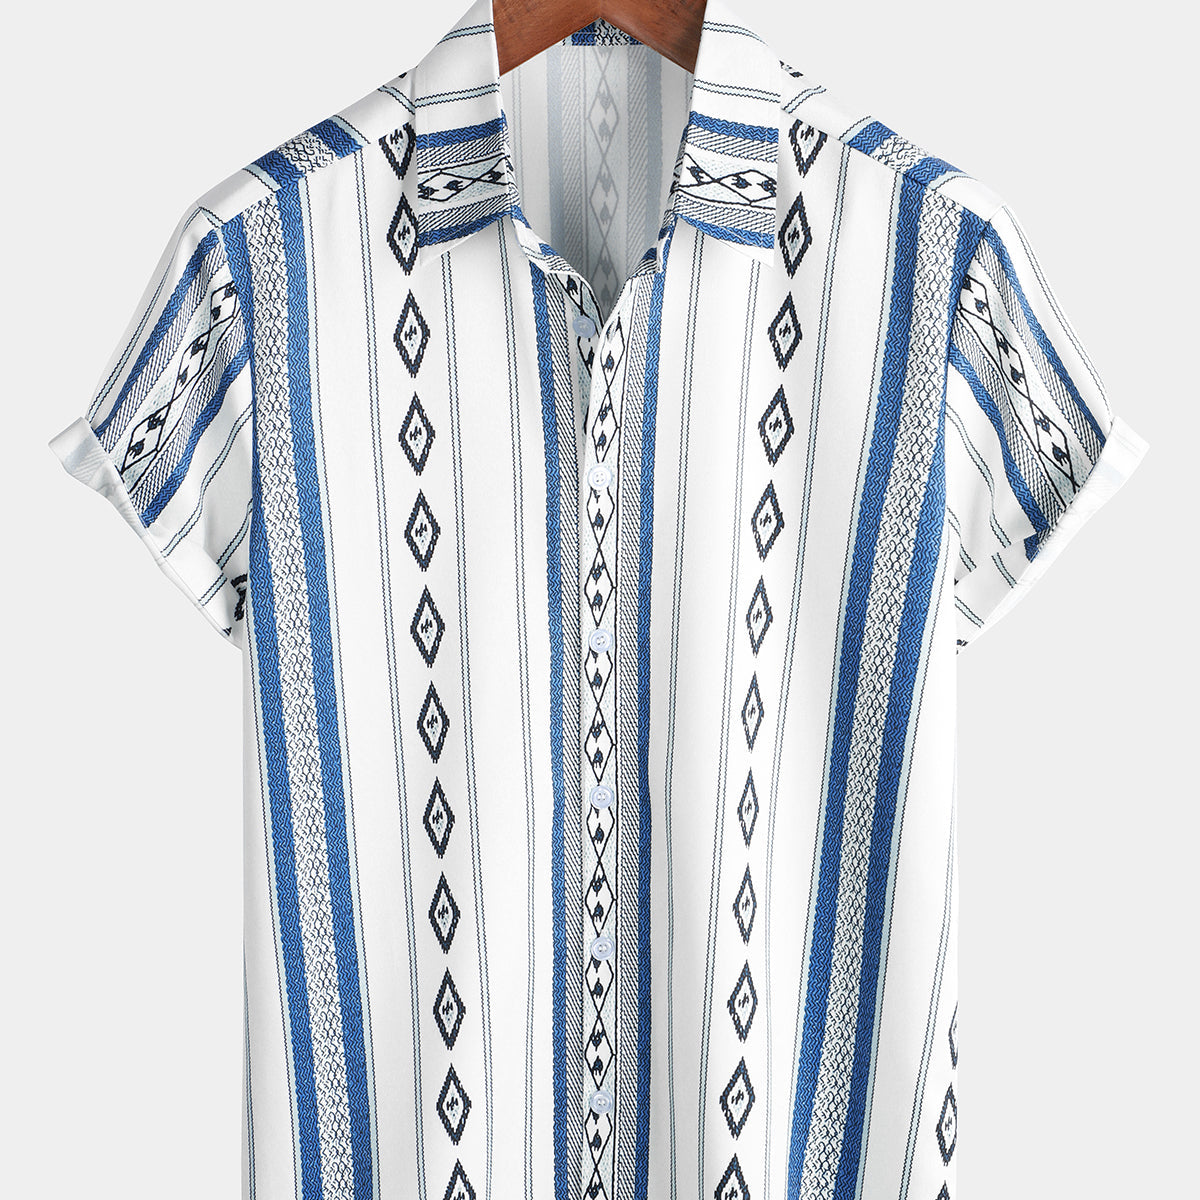 Camisa informal con botones y estampado azteca retro de manga corta vintage a rayas azules y blancas de los años 70 para hombre